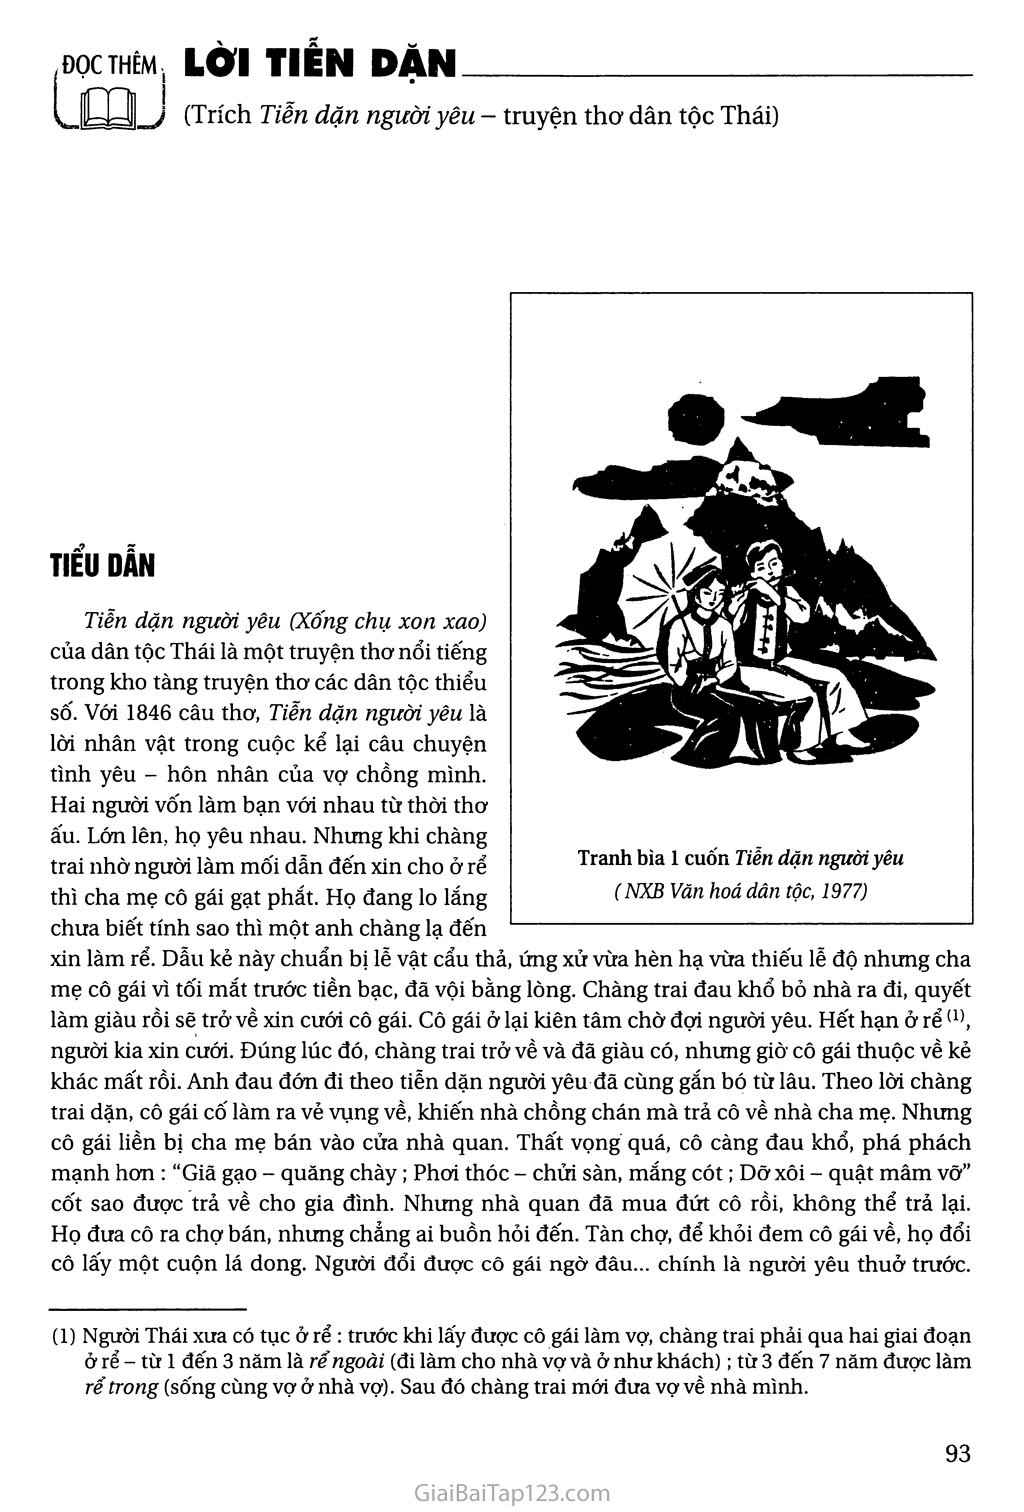 Đọc thêm. Lời tiễn dặn (trích Tiễn dặn người yêu - truyện thơ dân tộc Thái) trang 1